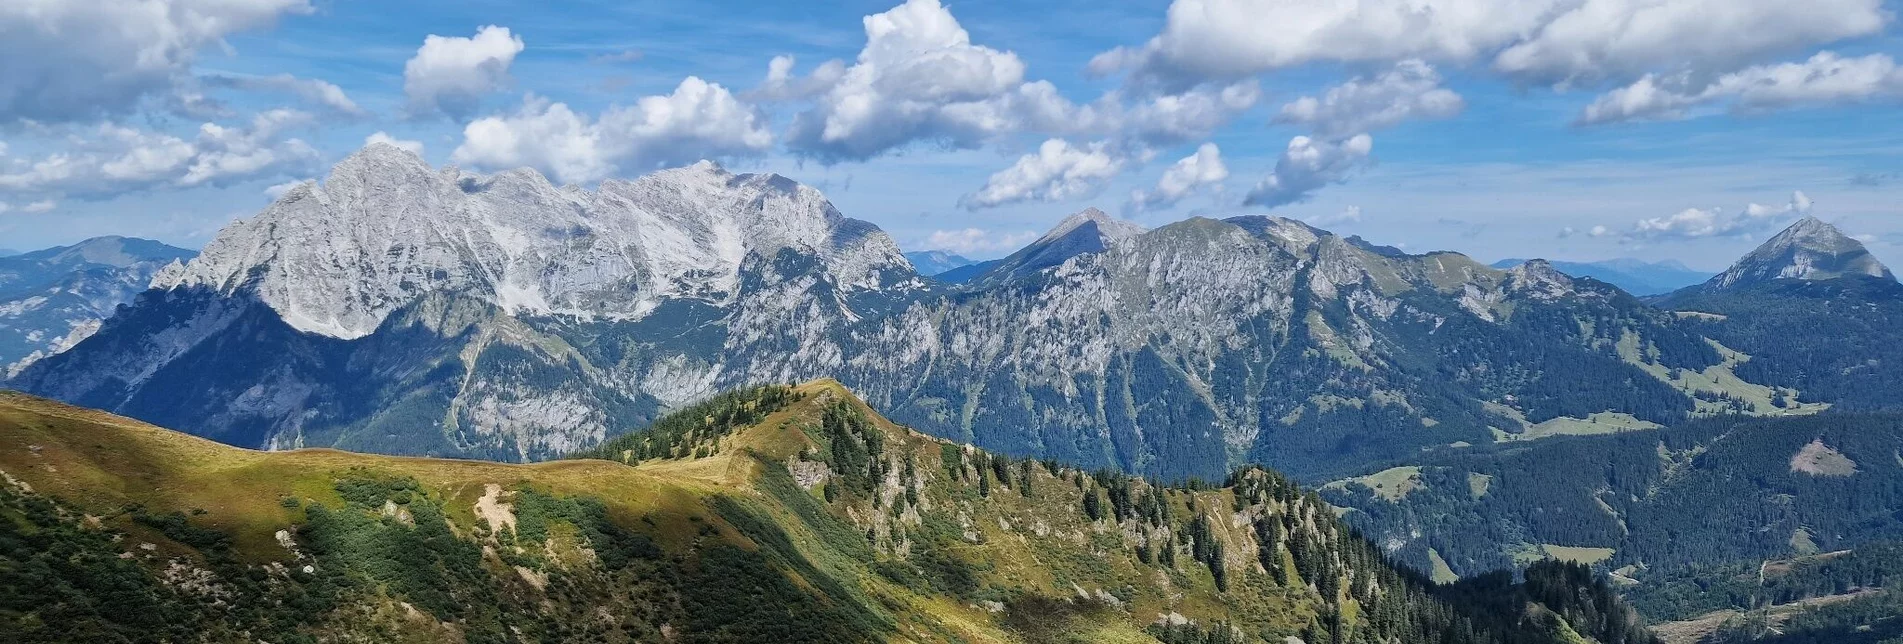 Mountain Hike Leobner - Blaseneck Runde - Touren-Impression #1 | © TV Gesäuse